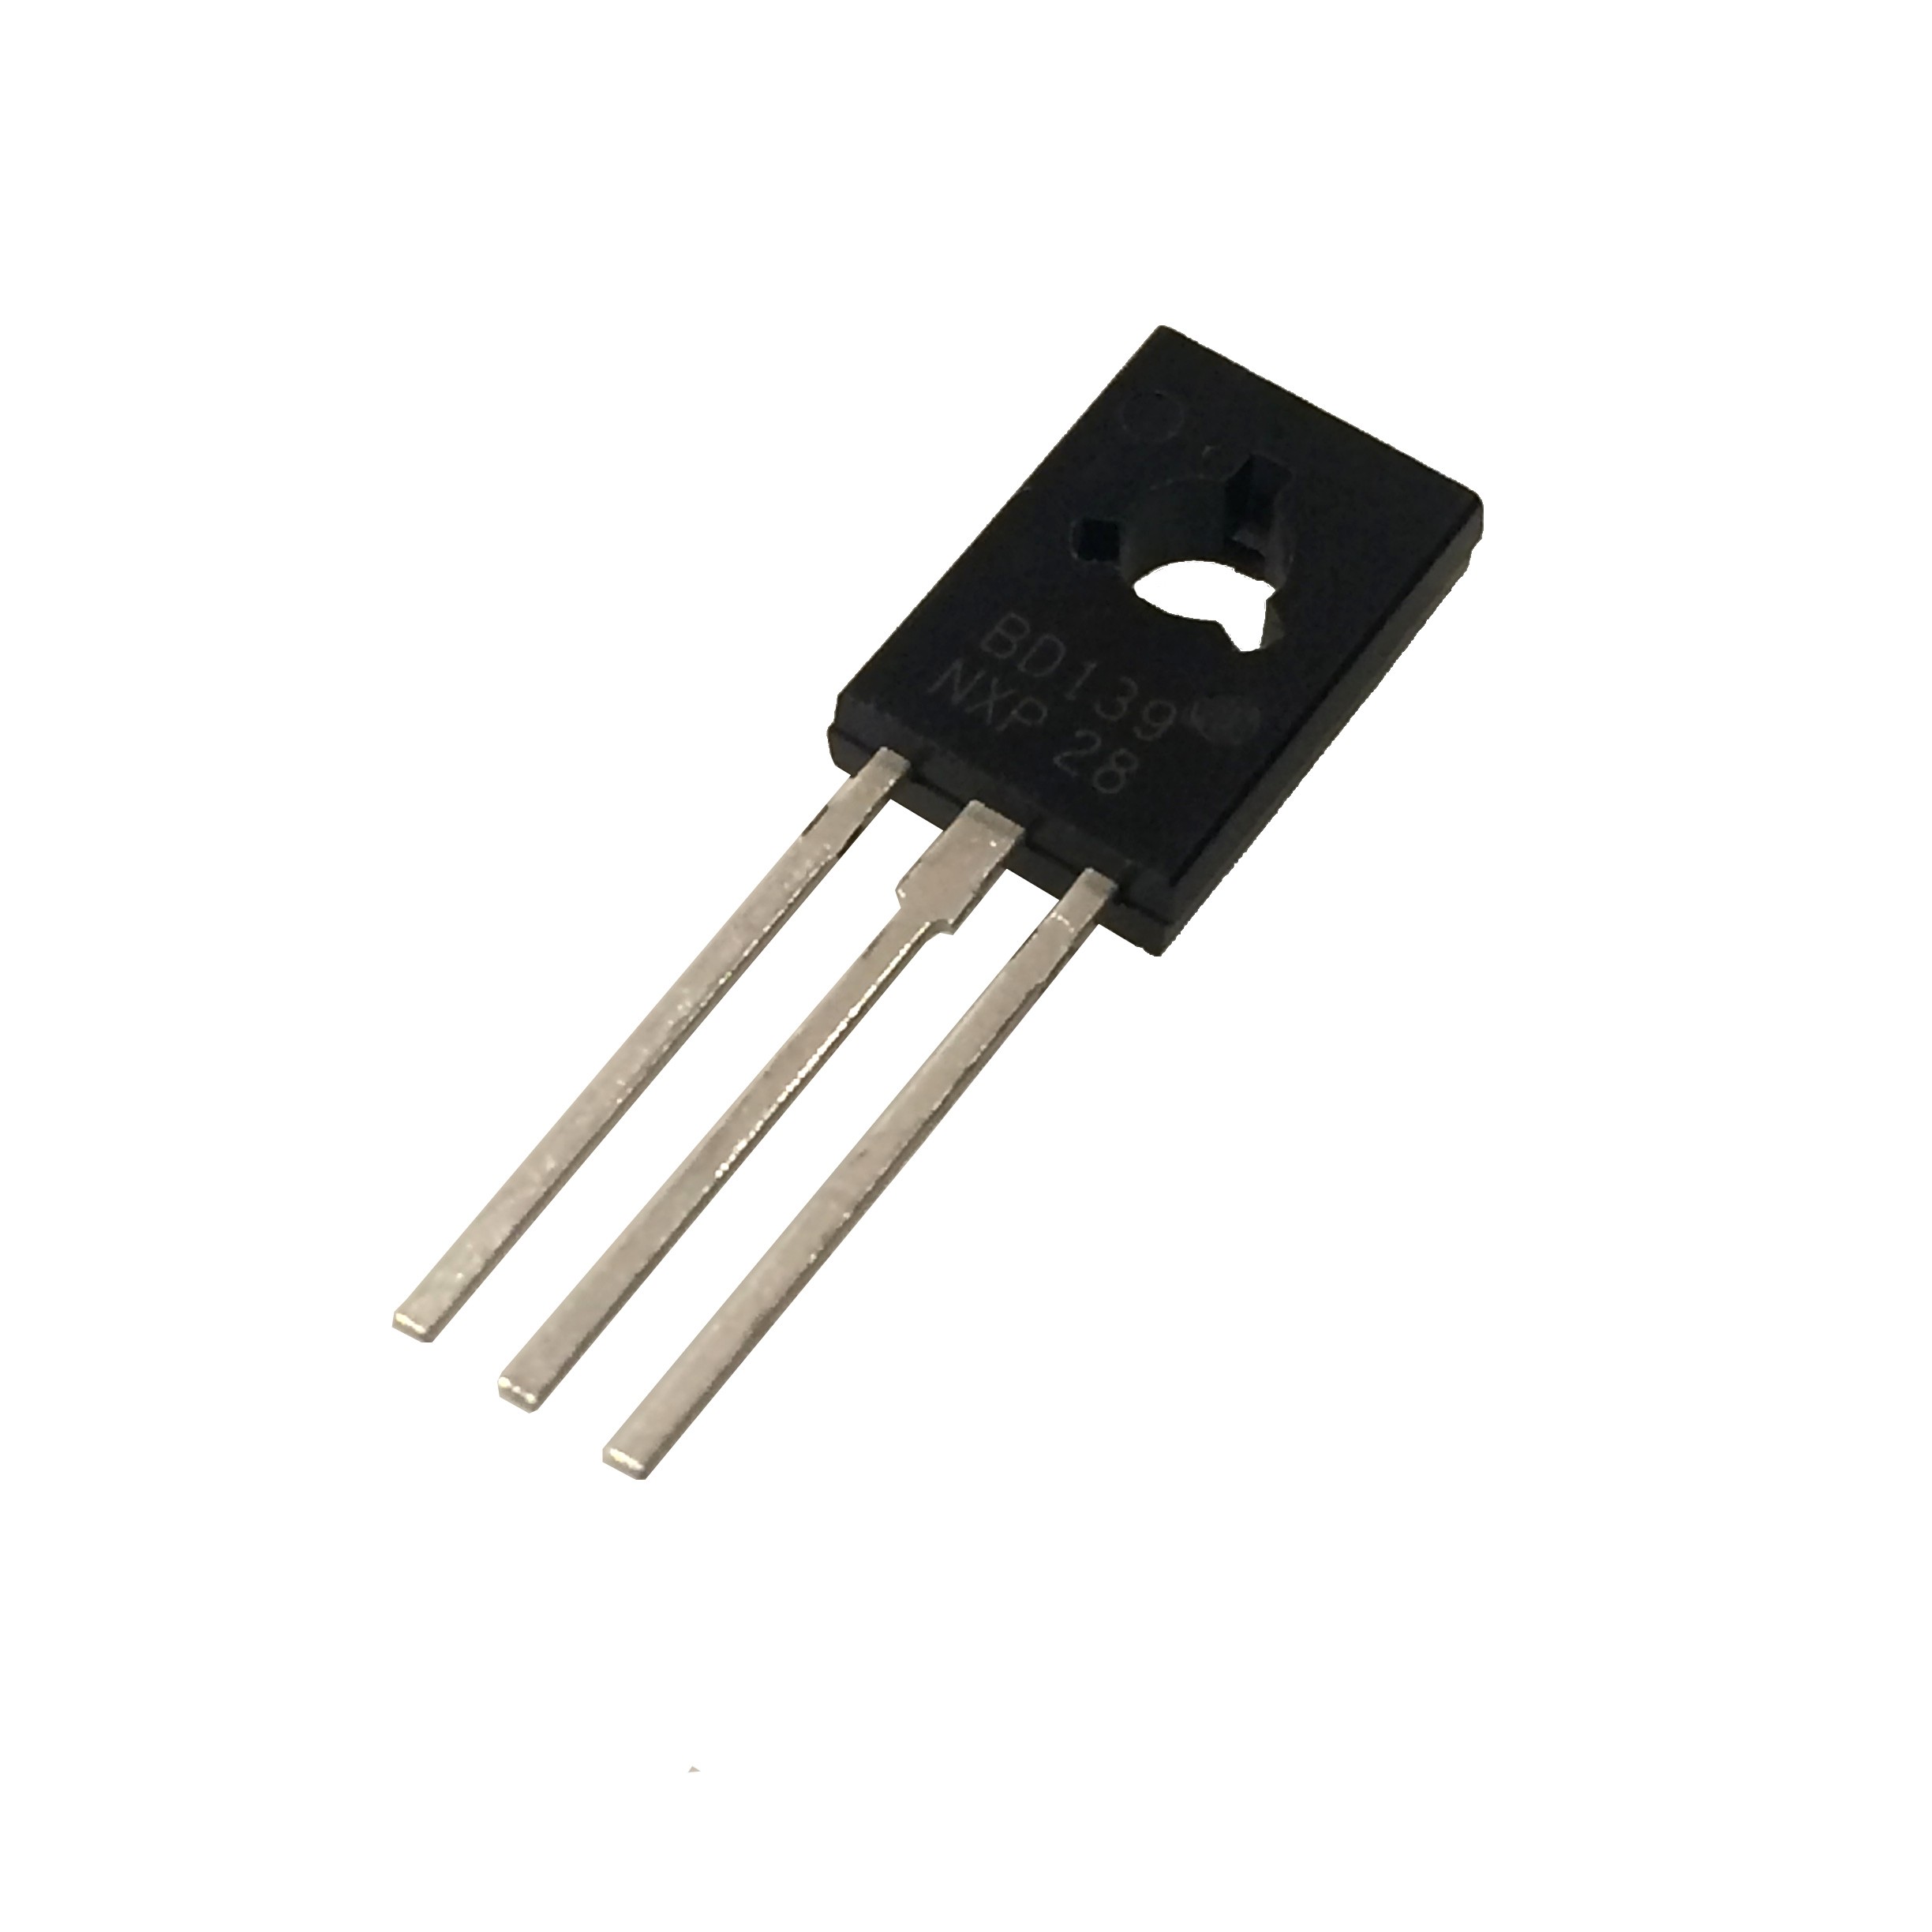 $1.99 - BD139 NPN Transistor 80V 1.5A - Tinkersphere